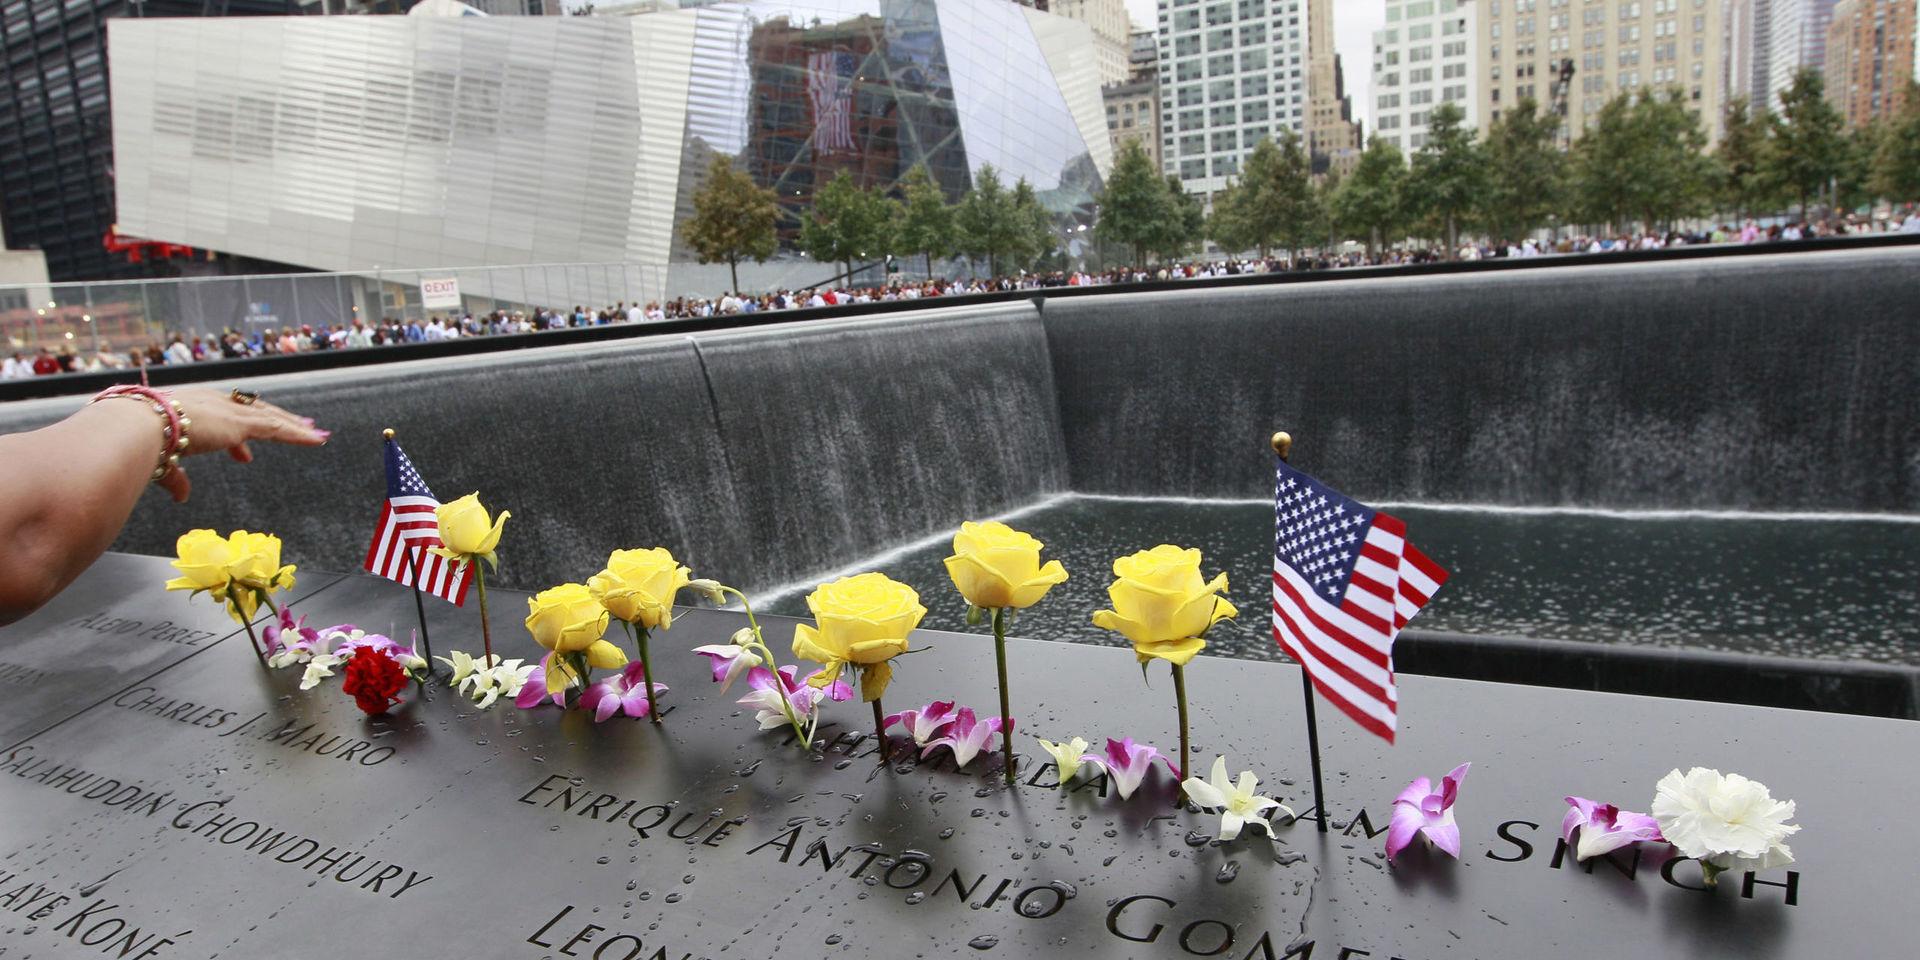 Blommor vid en minnesceremoni över attackerna på World Trade Center den 11 september 2001. Efter det tillkom Sveriges terrorlagstifning i sin nuvarande form, skriver insändarskribenten.